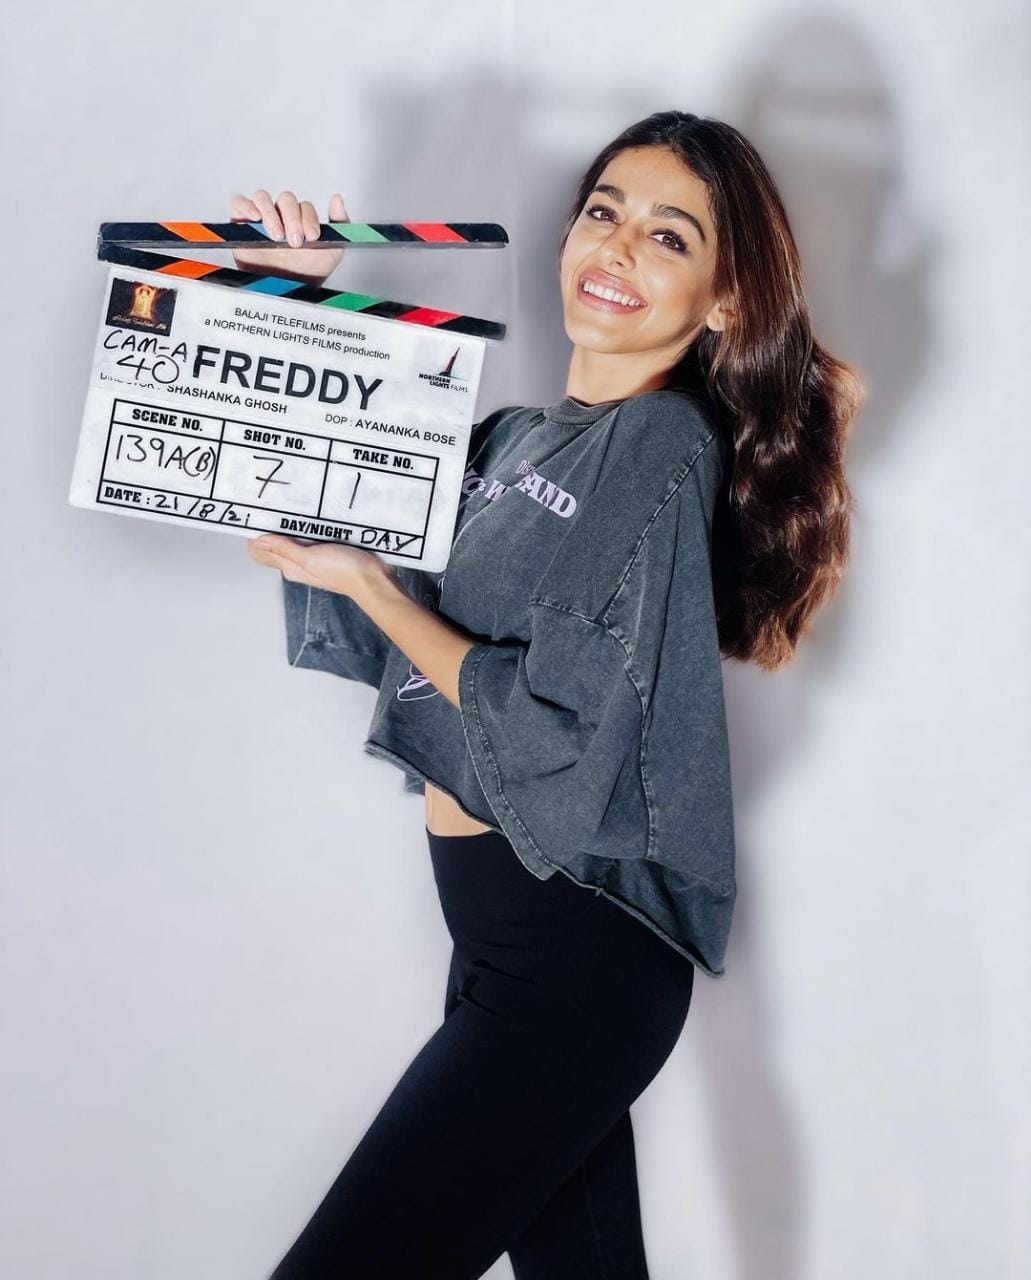 Alaya F started filming Kelly 'Freddy'